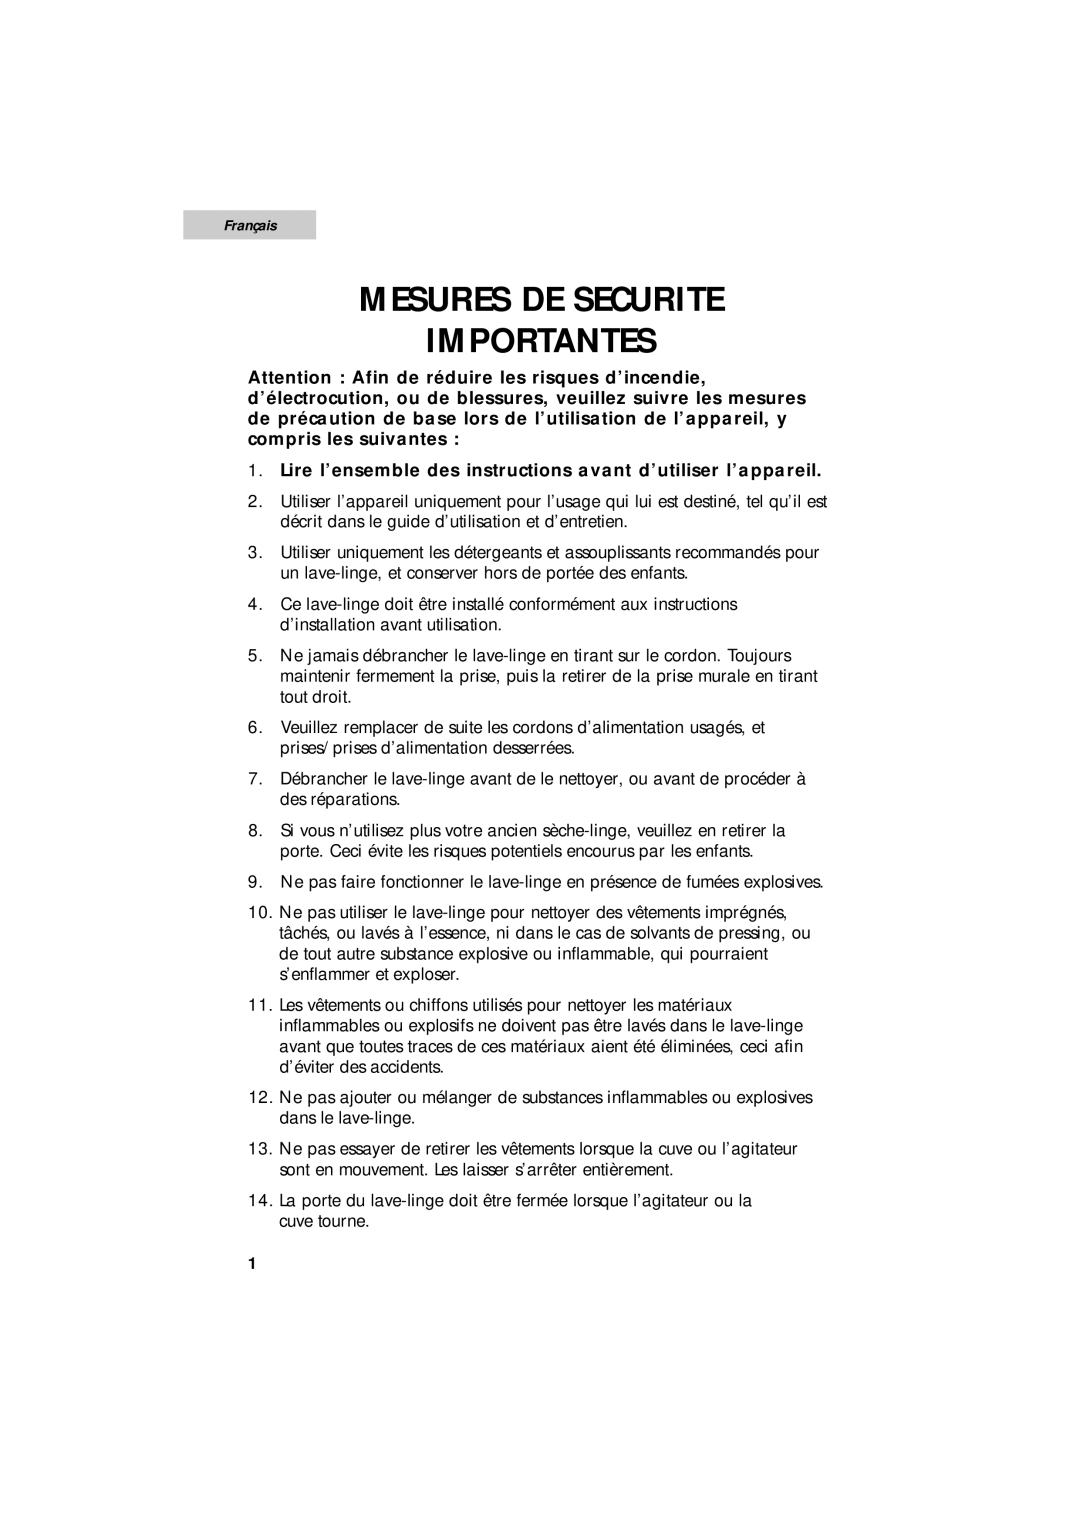 Summit SPW1200P Mesures De Securite Importantes, Français, Lire l’ensemble des instructions avant d’utiliser l’appareil 